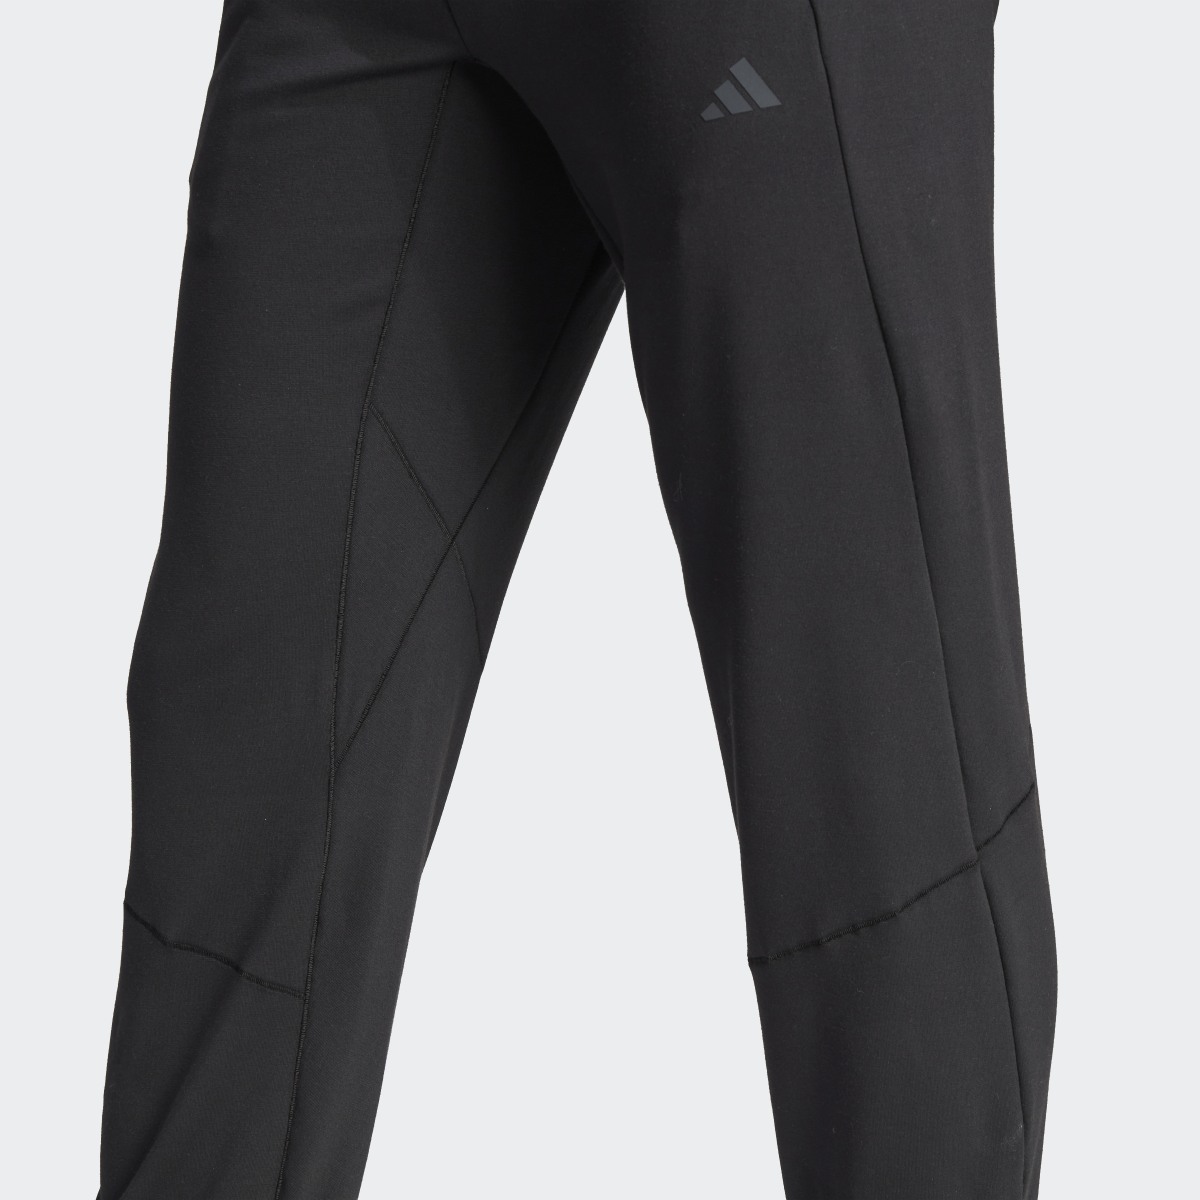 Adidas Designed for Training Yoga Training 7/8 Pants. 8